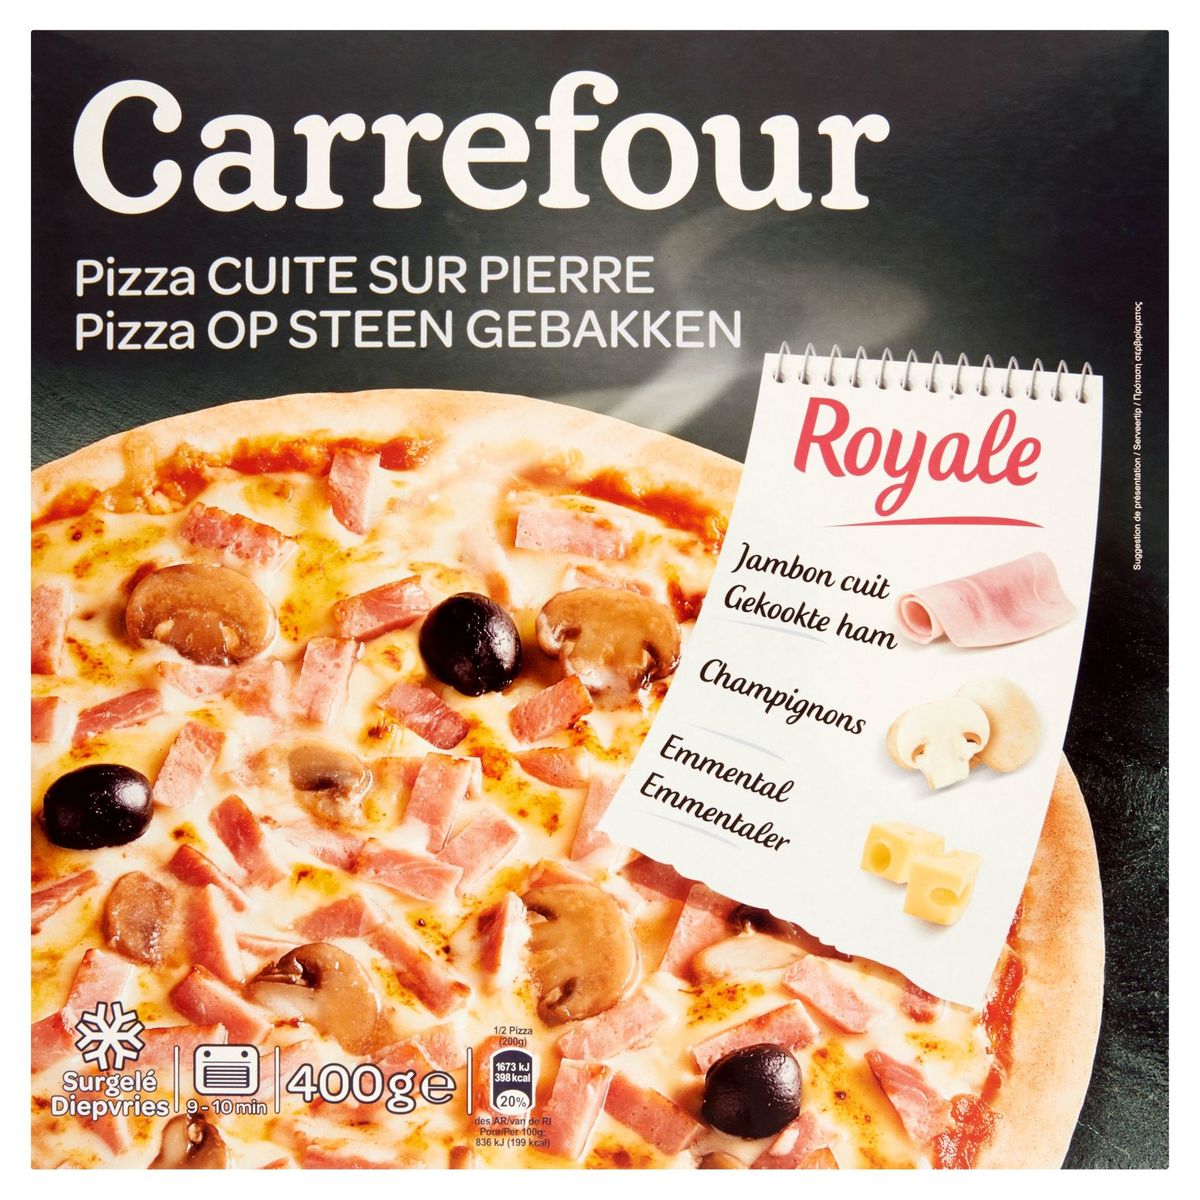 Carrefour Pizza Cuite sur Pierre Royale 400 g